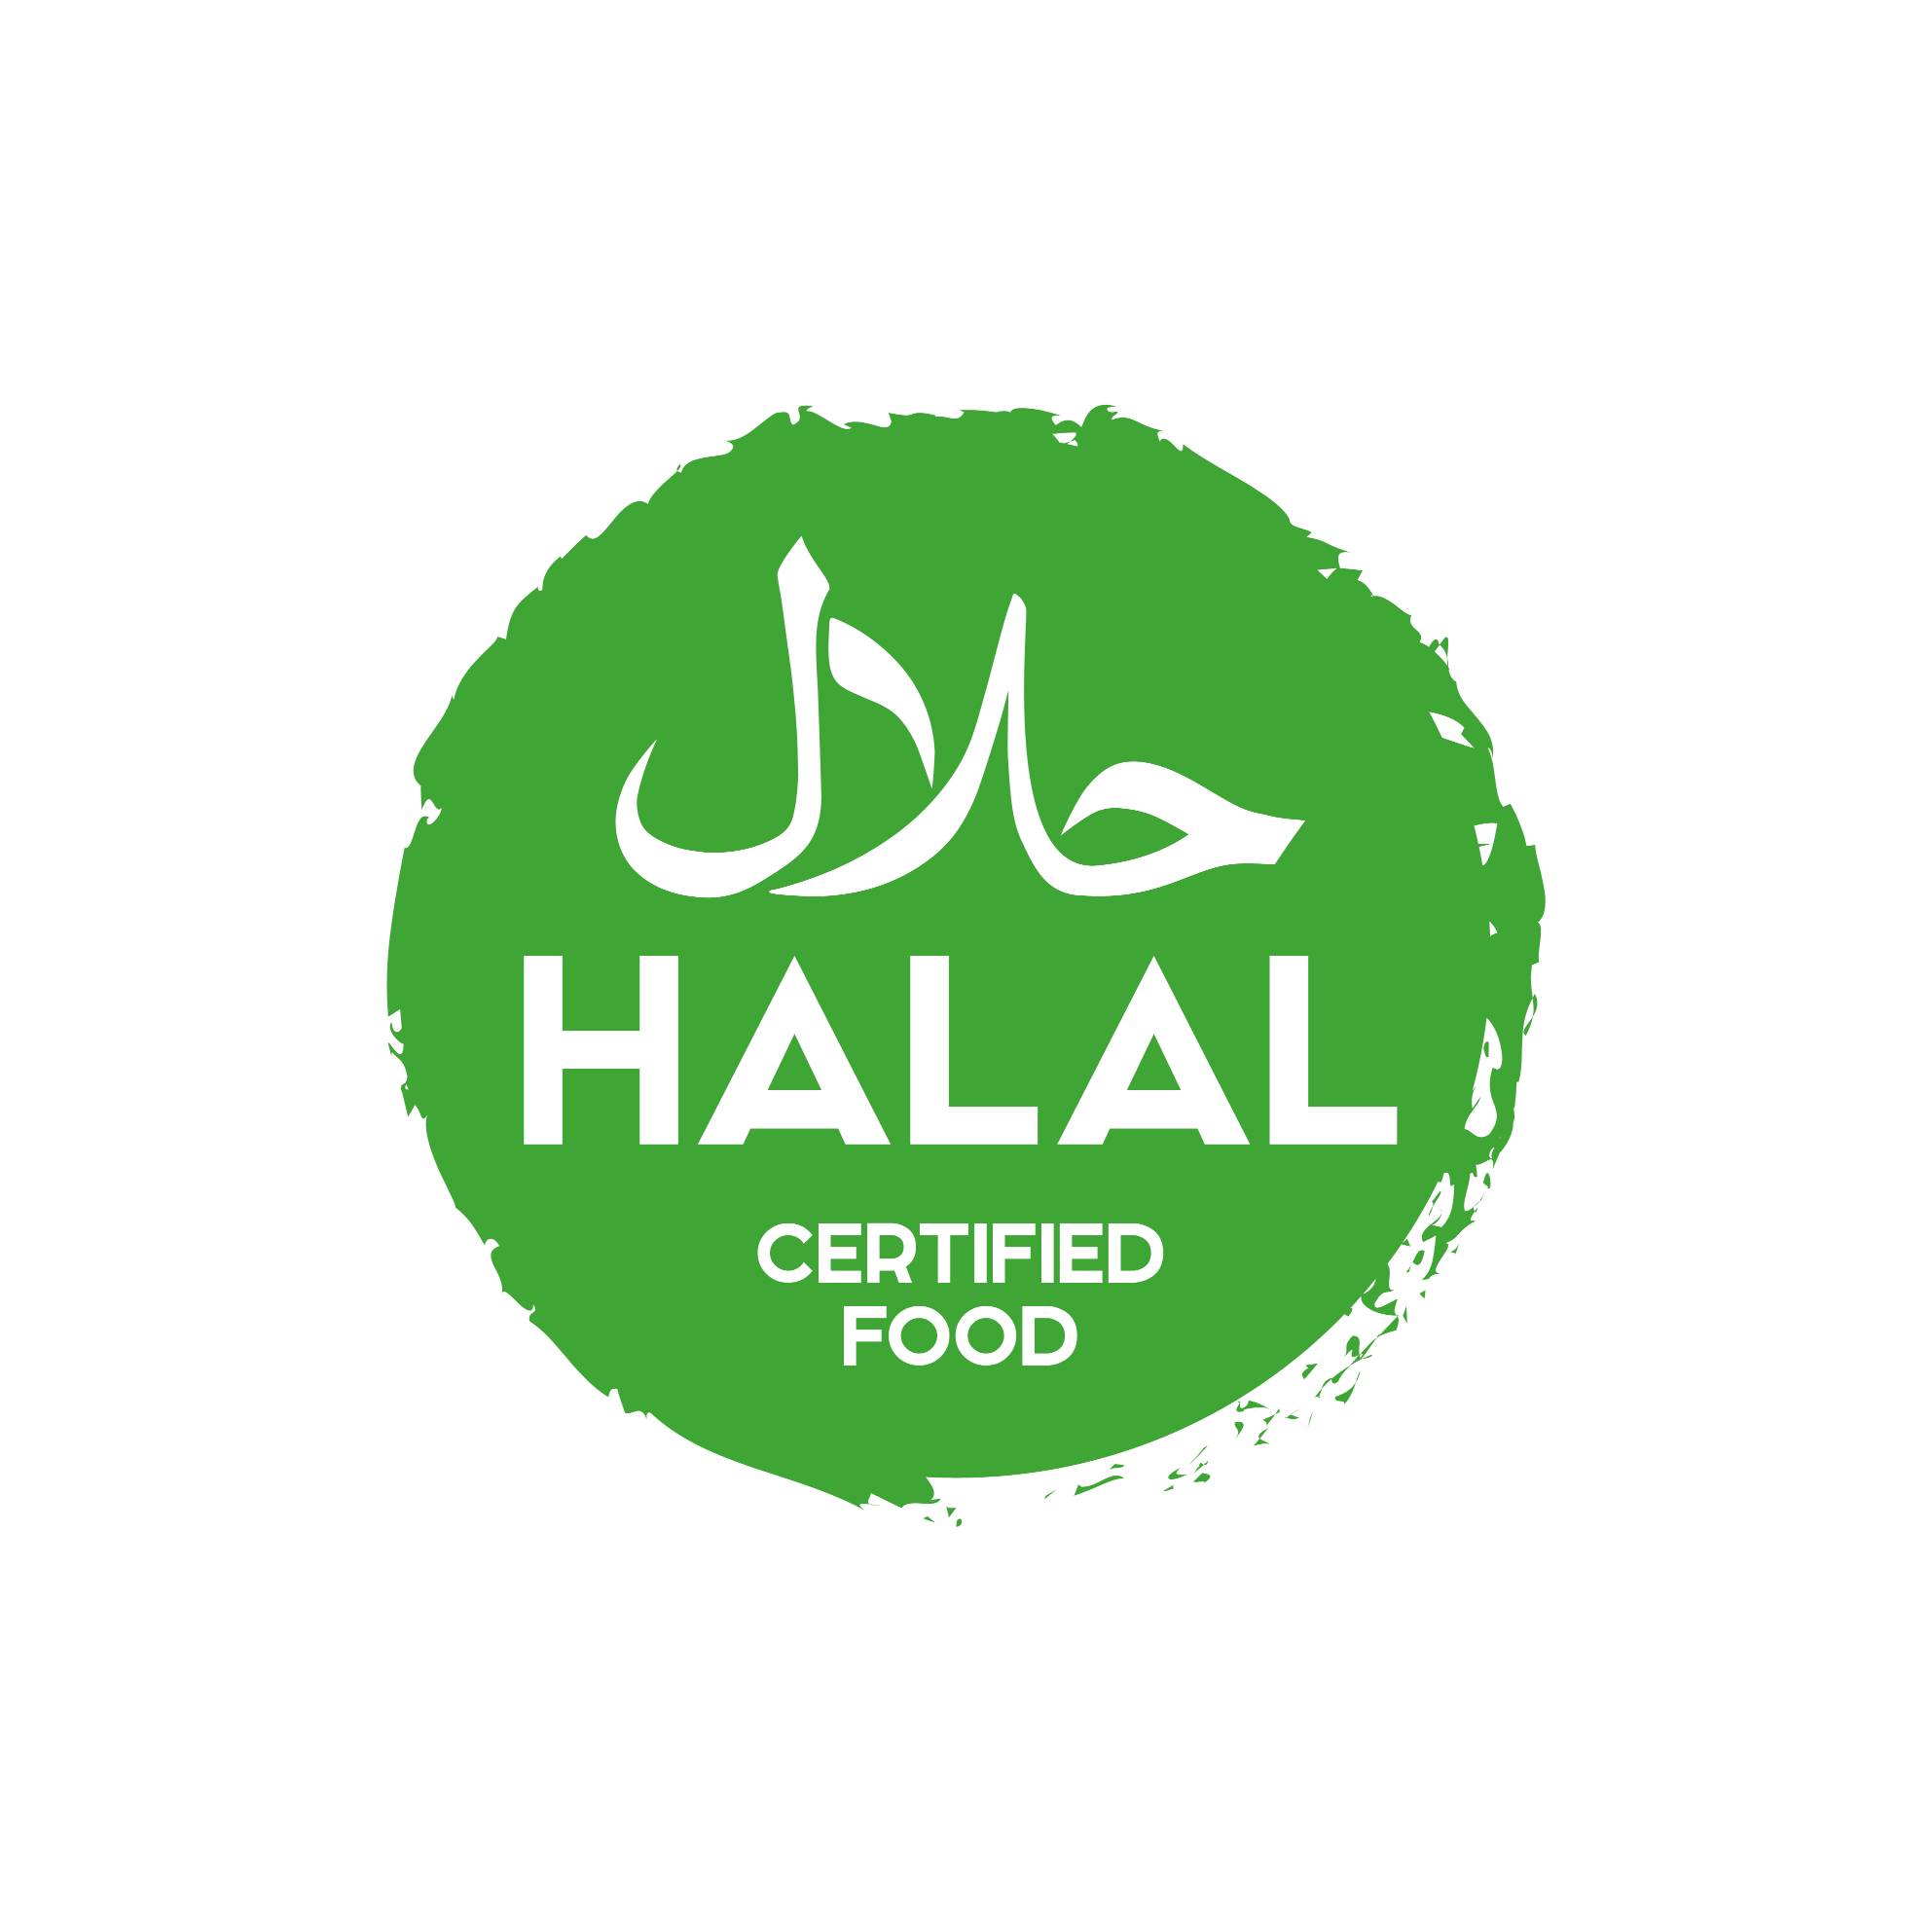 halal food logo